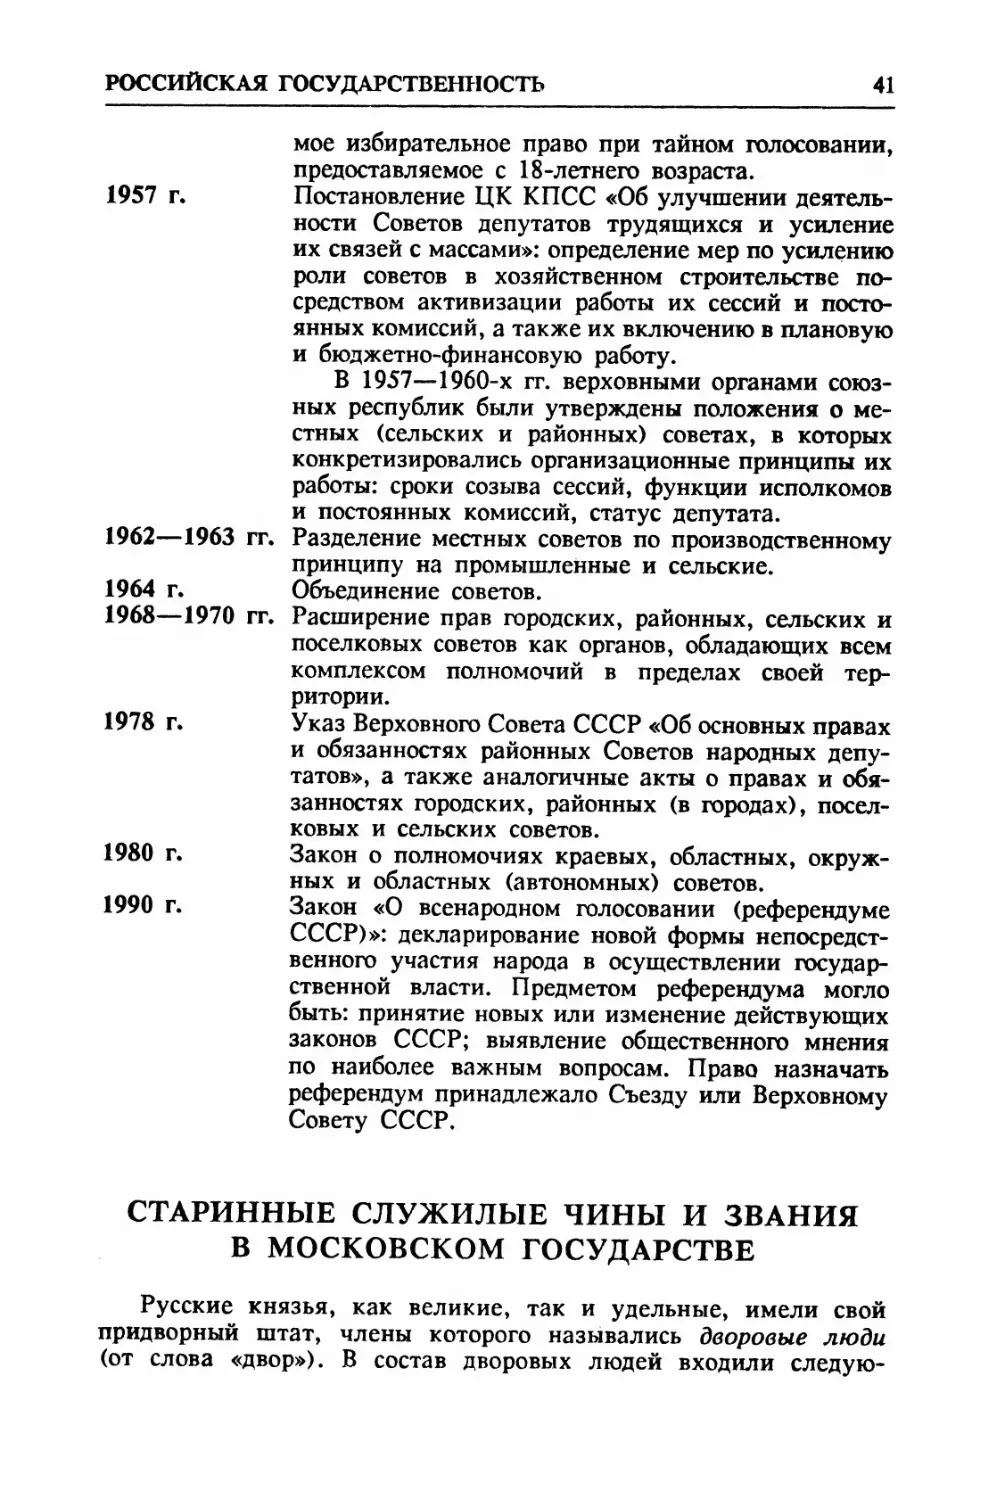 Старинные служилые чины и звания в Московском государстве